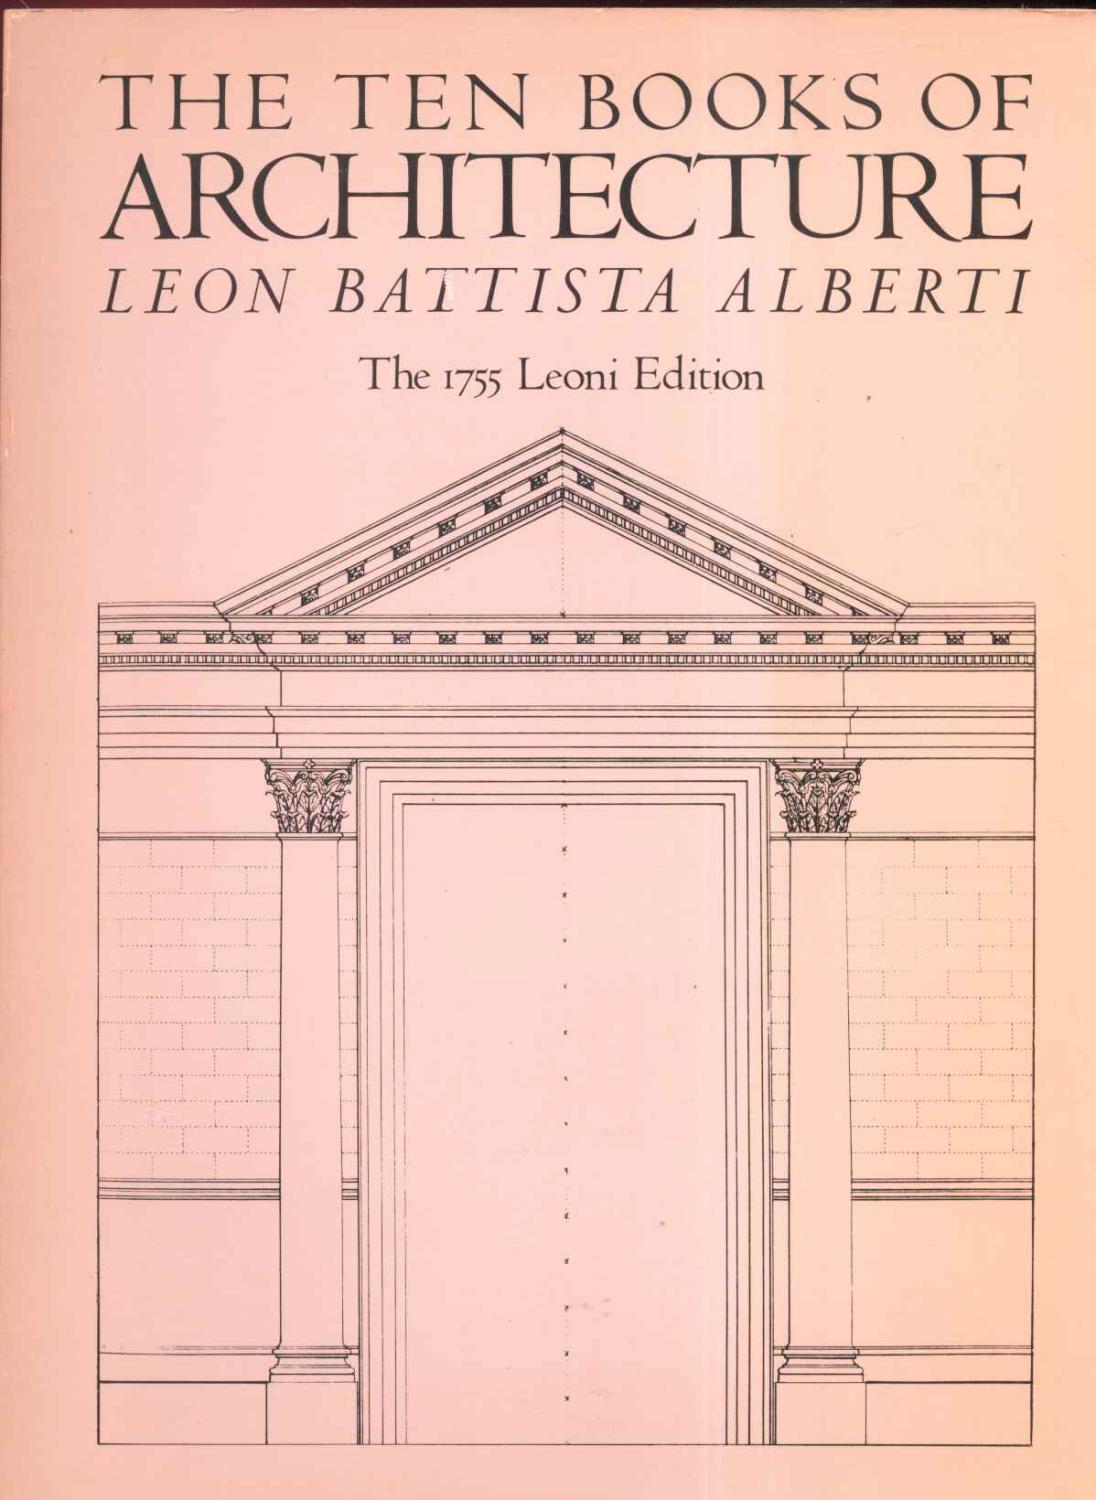 The Ten Books of Architecture The 1755 Leoni Edition